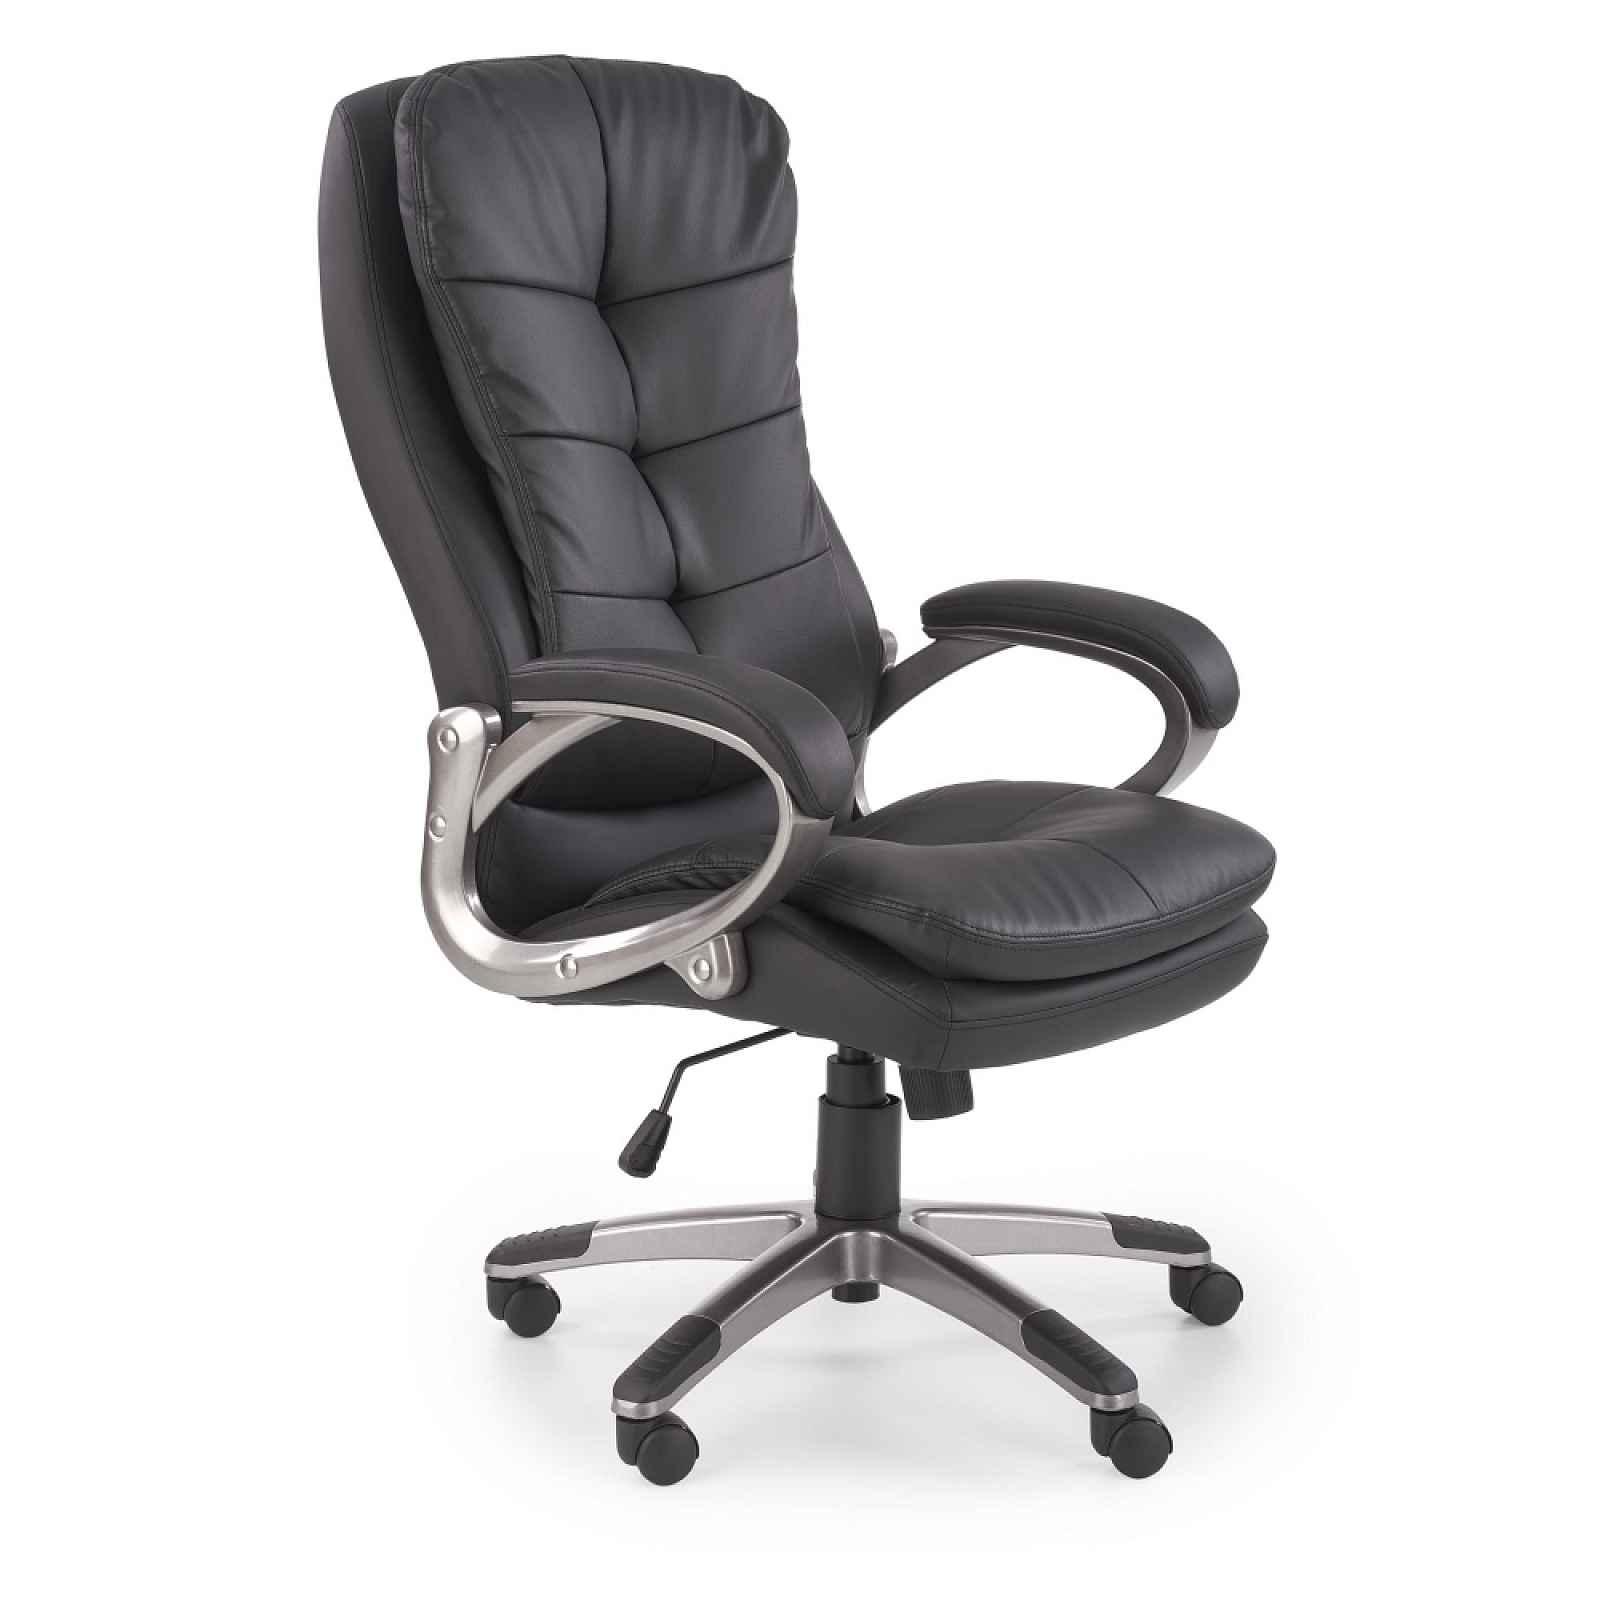 Kancelářská židle KRESIDA, černá